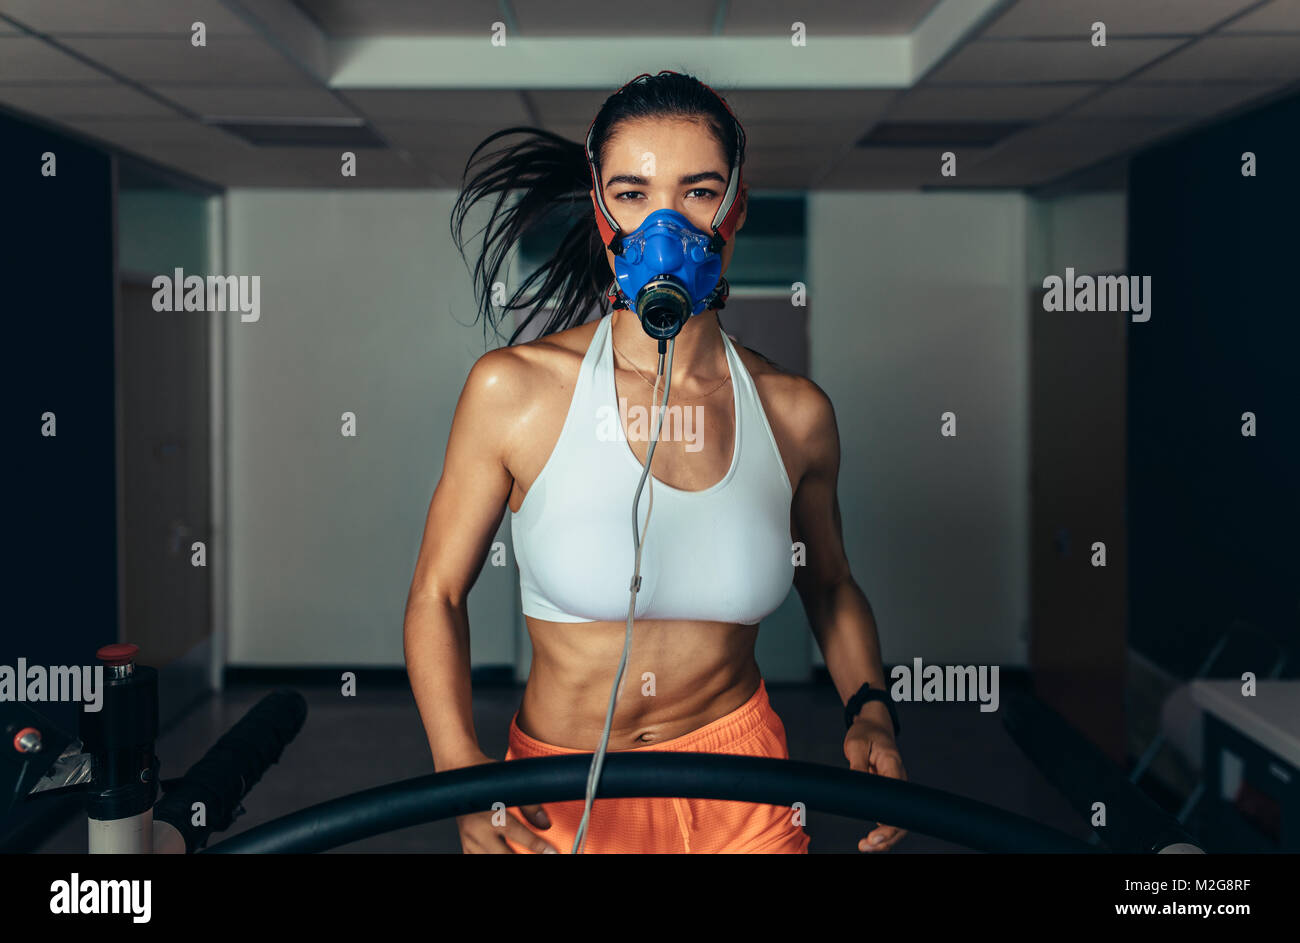 Portrait of female runner wearing mask on treadmill in sports science lab. Grande sportive s'exécutant sur un tapis roulant et le suivi de ses performances de remise en forme. Banque D'Images